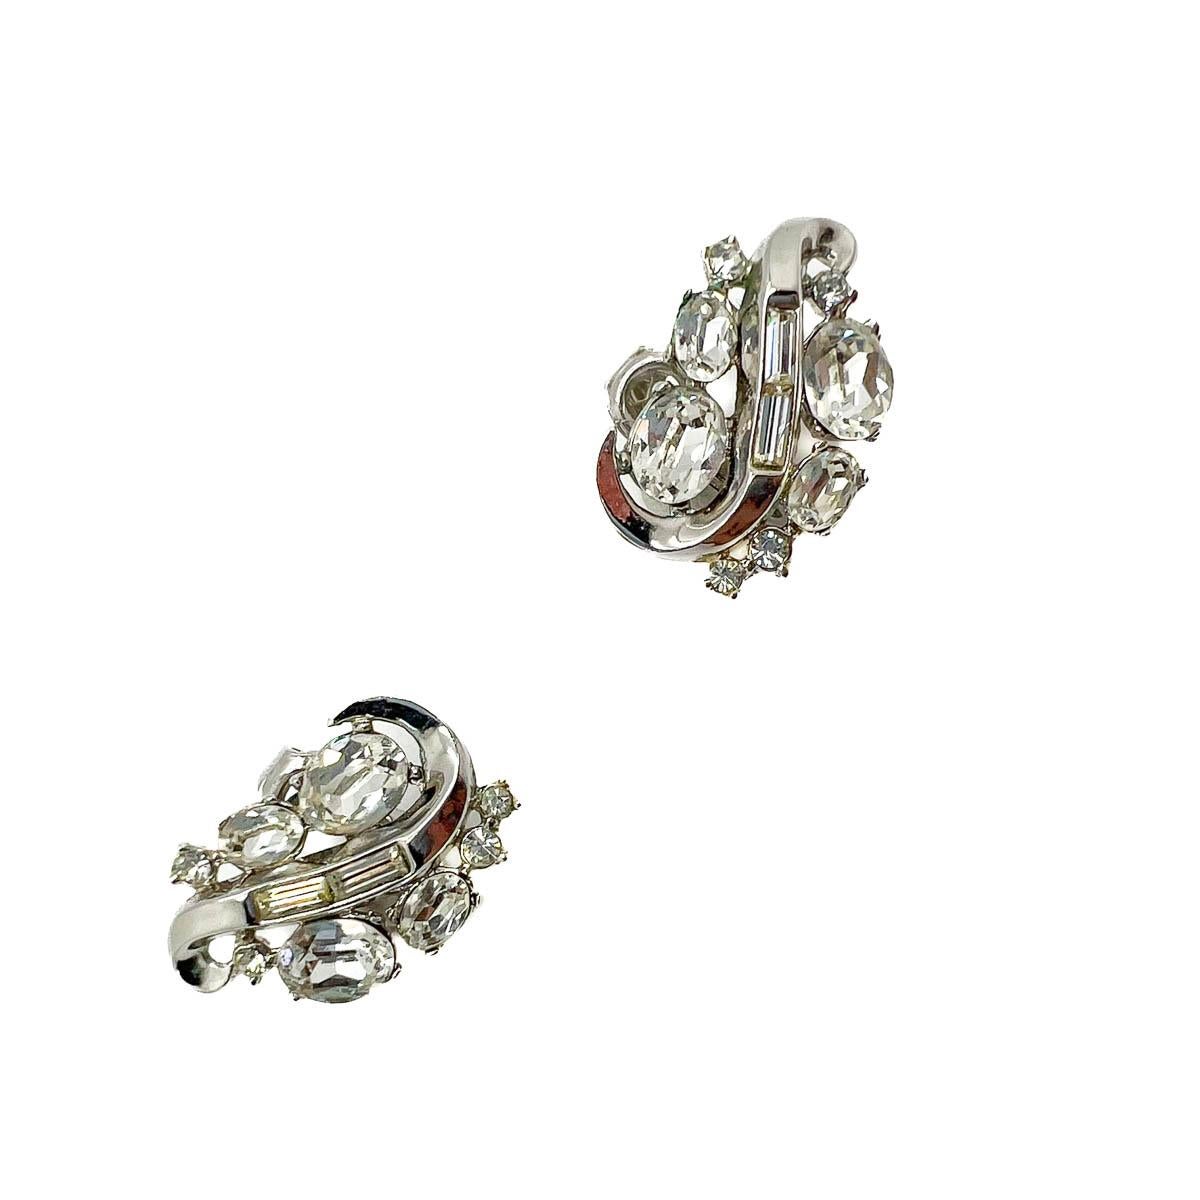 Ein Paar Vintage Crown Trifari Crystal Swirl Ohrringe. Ein steinreiches Design mit großen ovalen Kristallen, die mit rhodinierten Details in Baguette-Kristallen verziert sind. Ein ewiger Klassiker und eine absolut schicke Ergänzung für Ihr